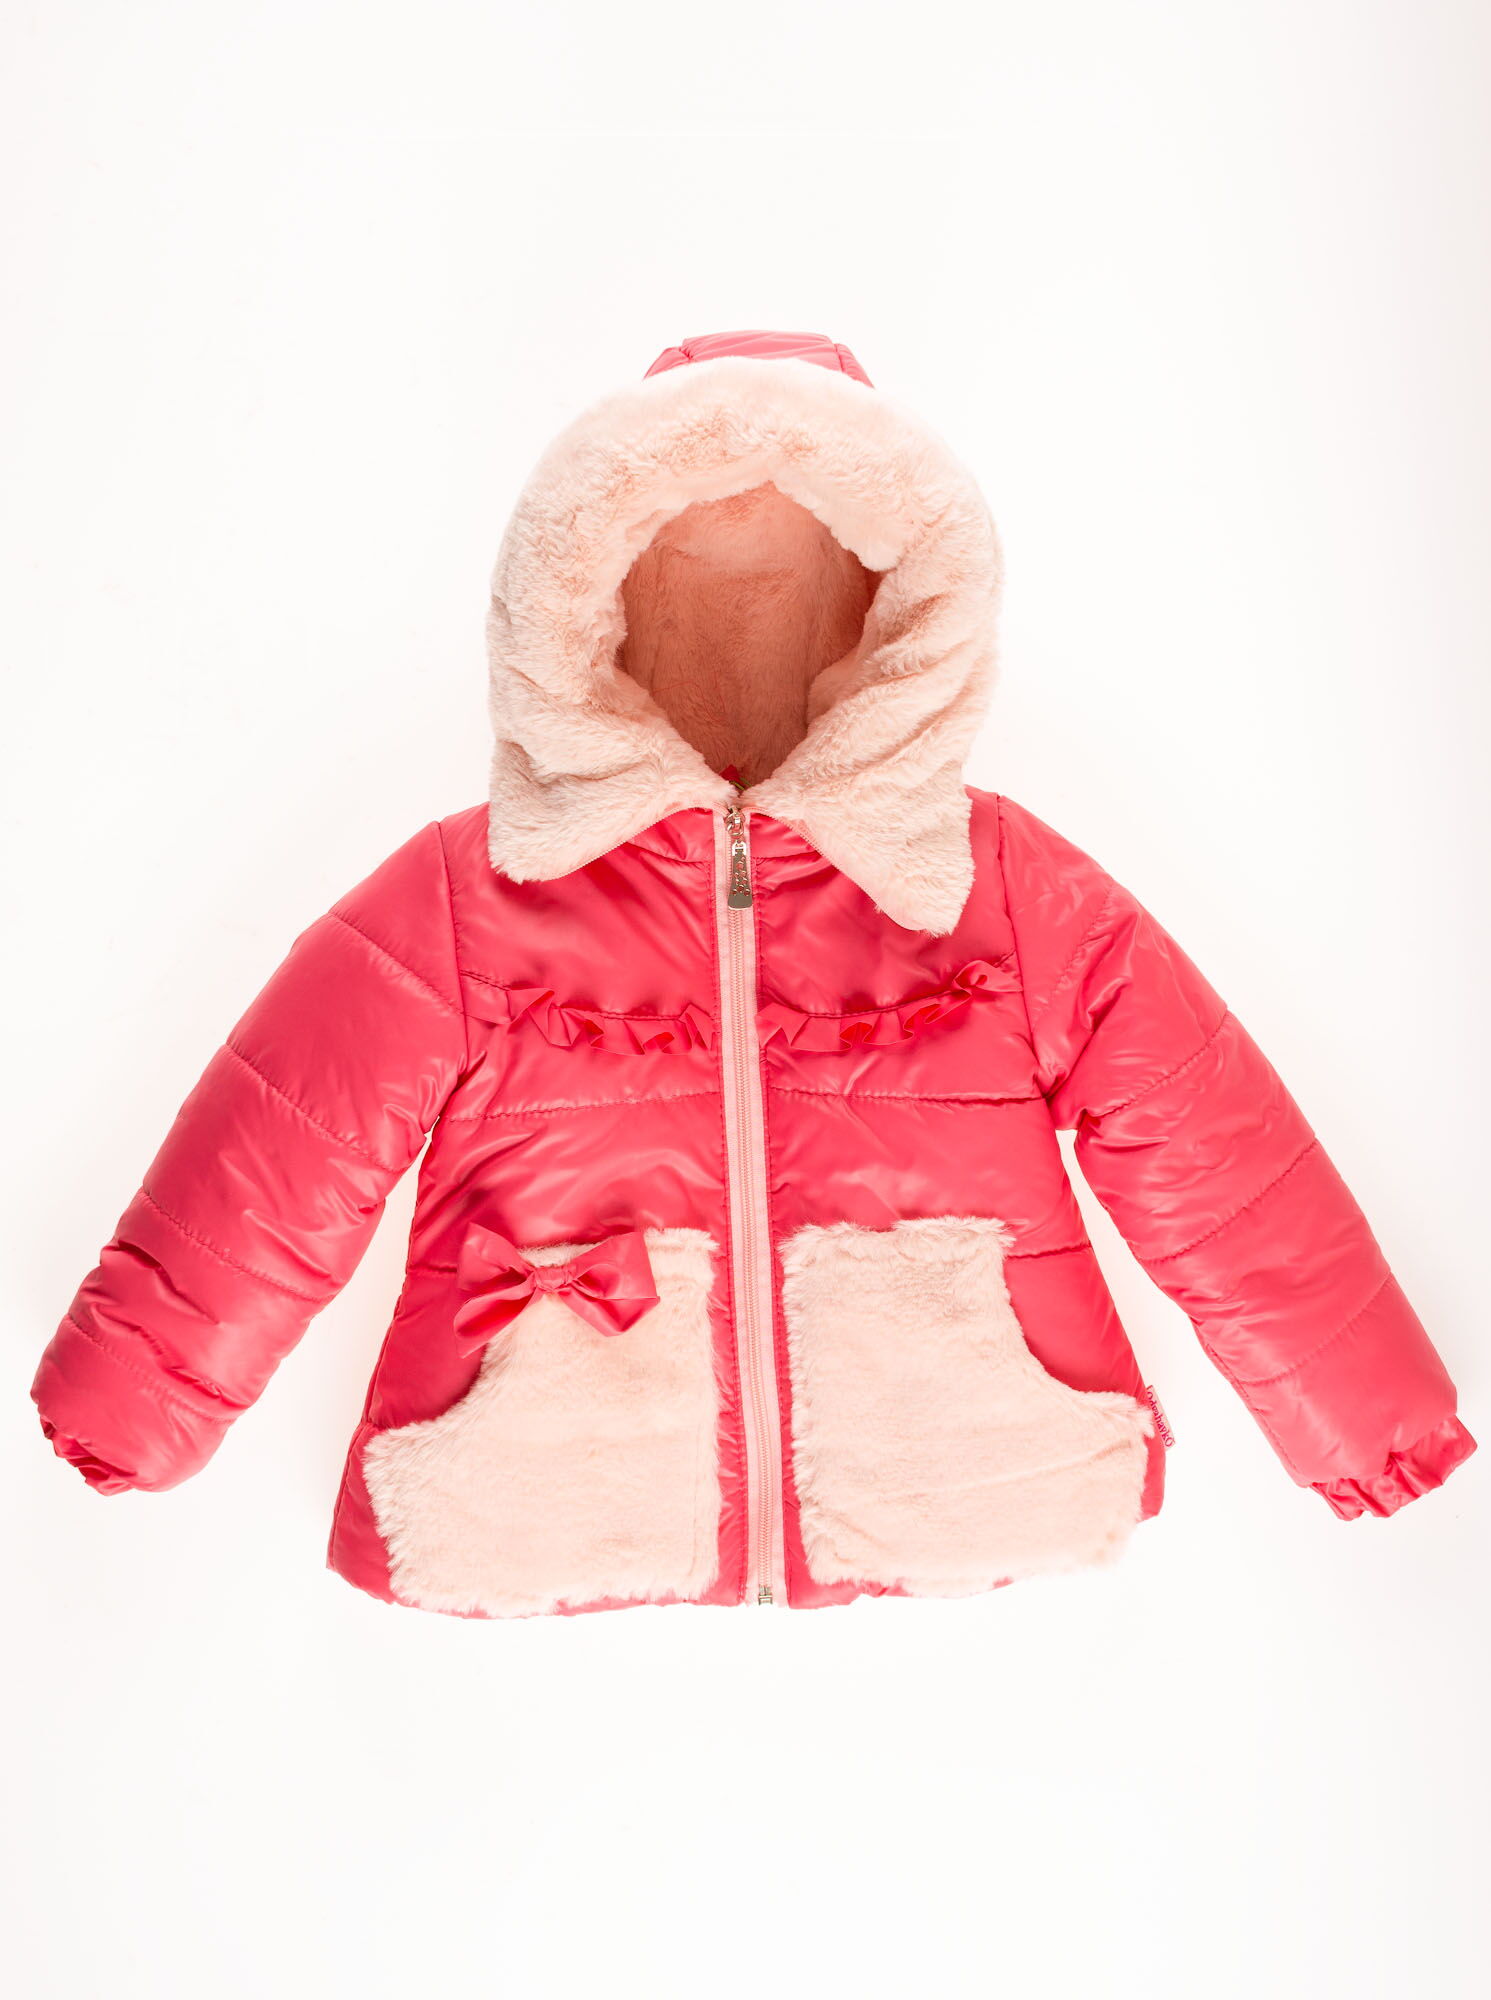 Комбинезон раздельный зимний для девочки (куртка+штаны) ОДЯГАЙКО коралловый 20023/32005 - фотография